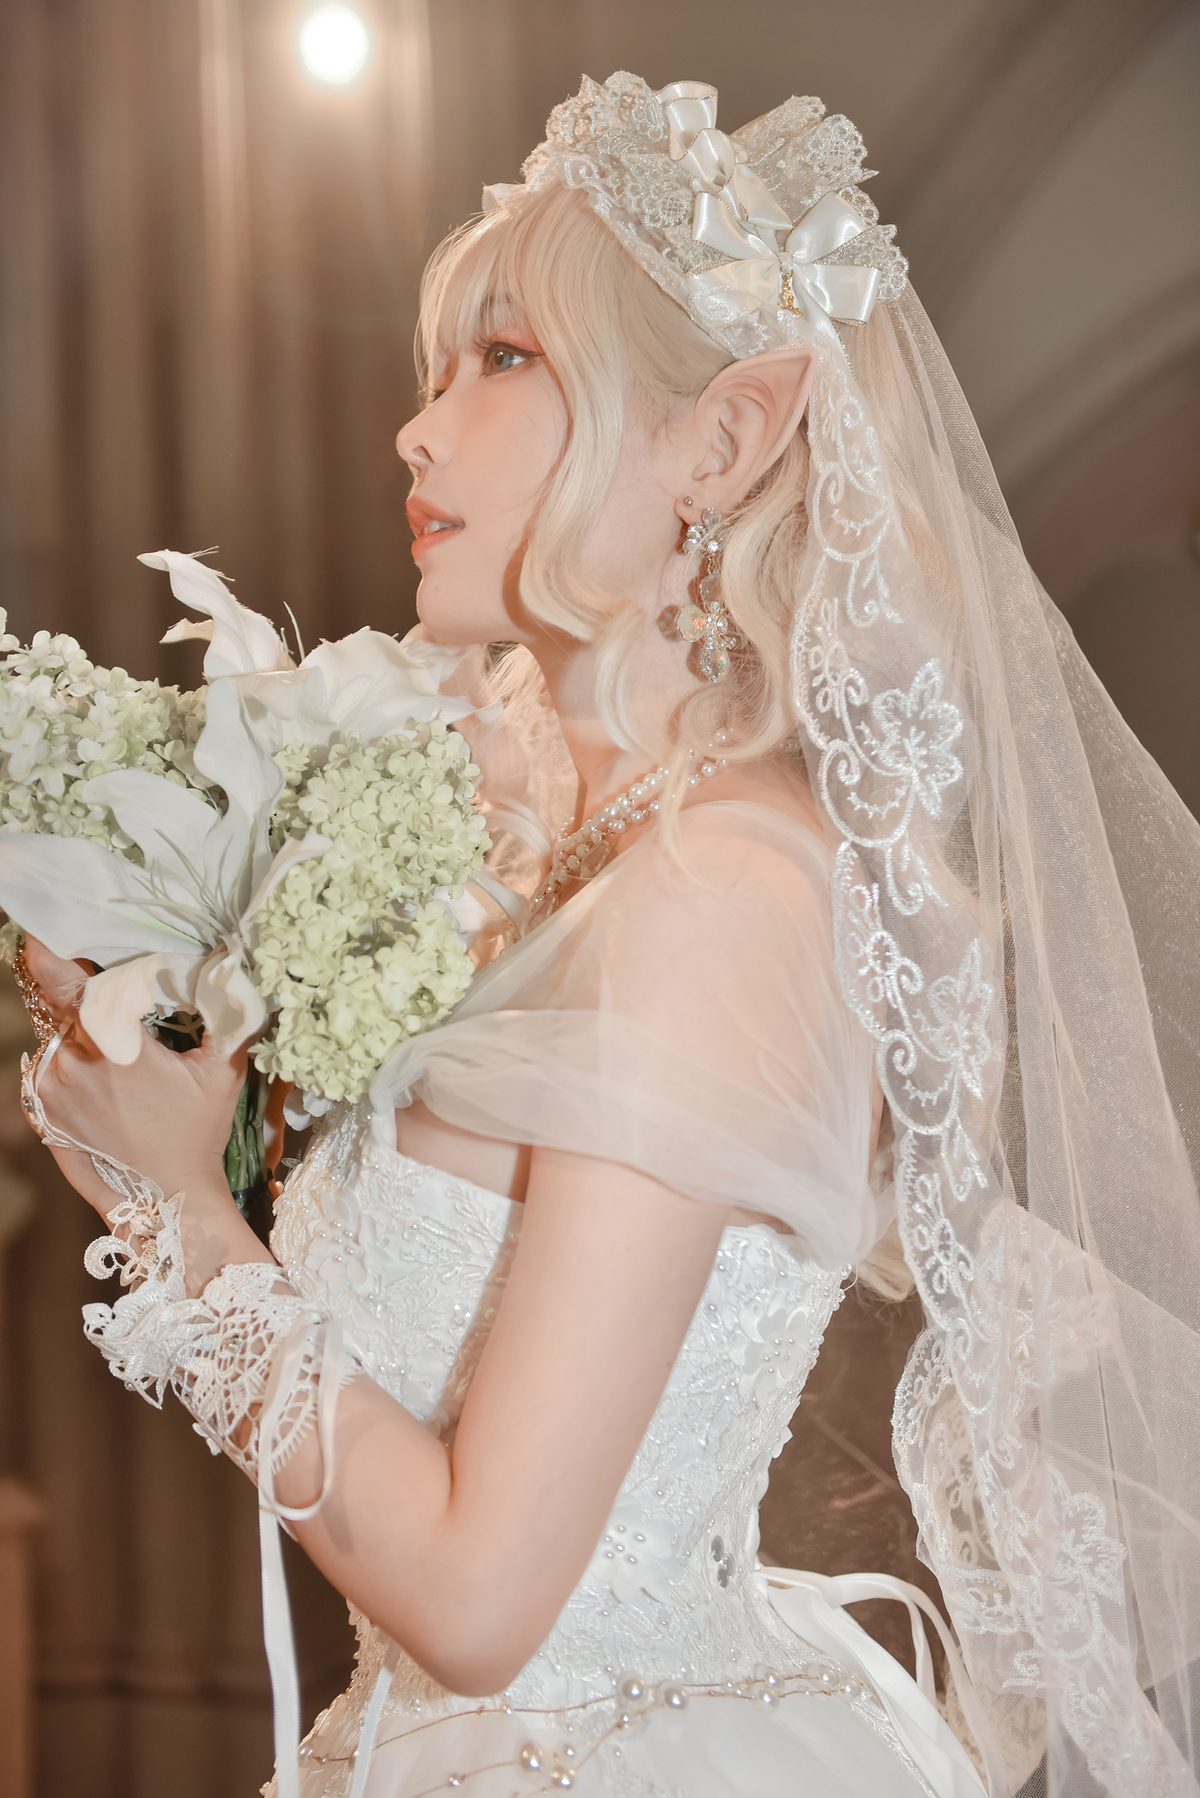 Coser@Ely_eee ElyEE子 Bride And Lingerie 0044 5156962788.jpg